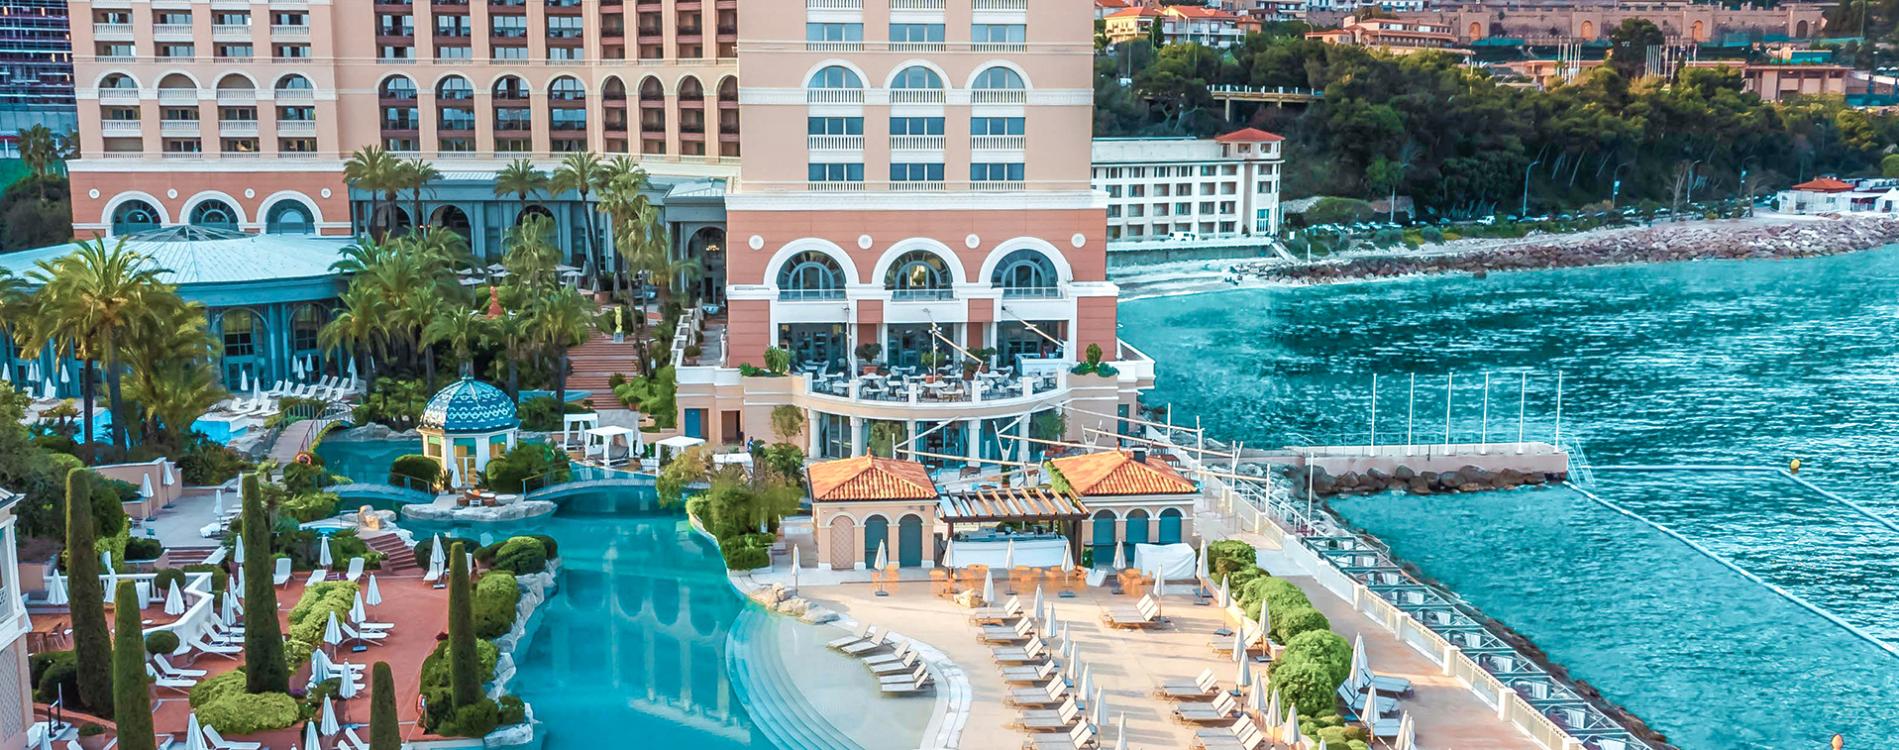 Monte-Carlo Bay Hotel & Resort, in Monte-Carlo, Monaco - Preferred